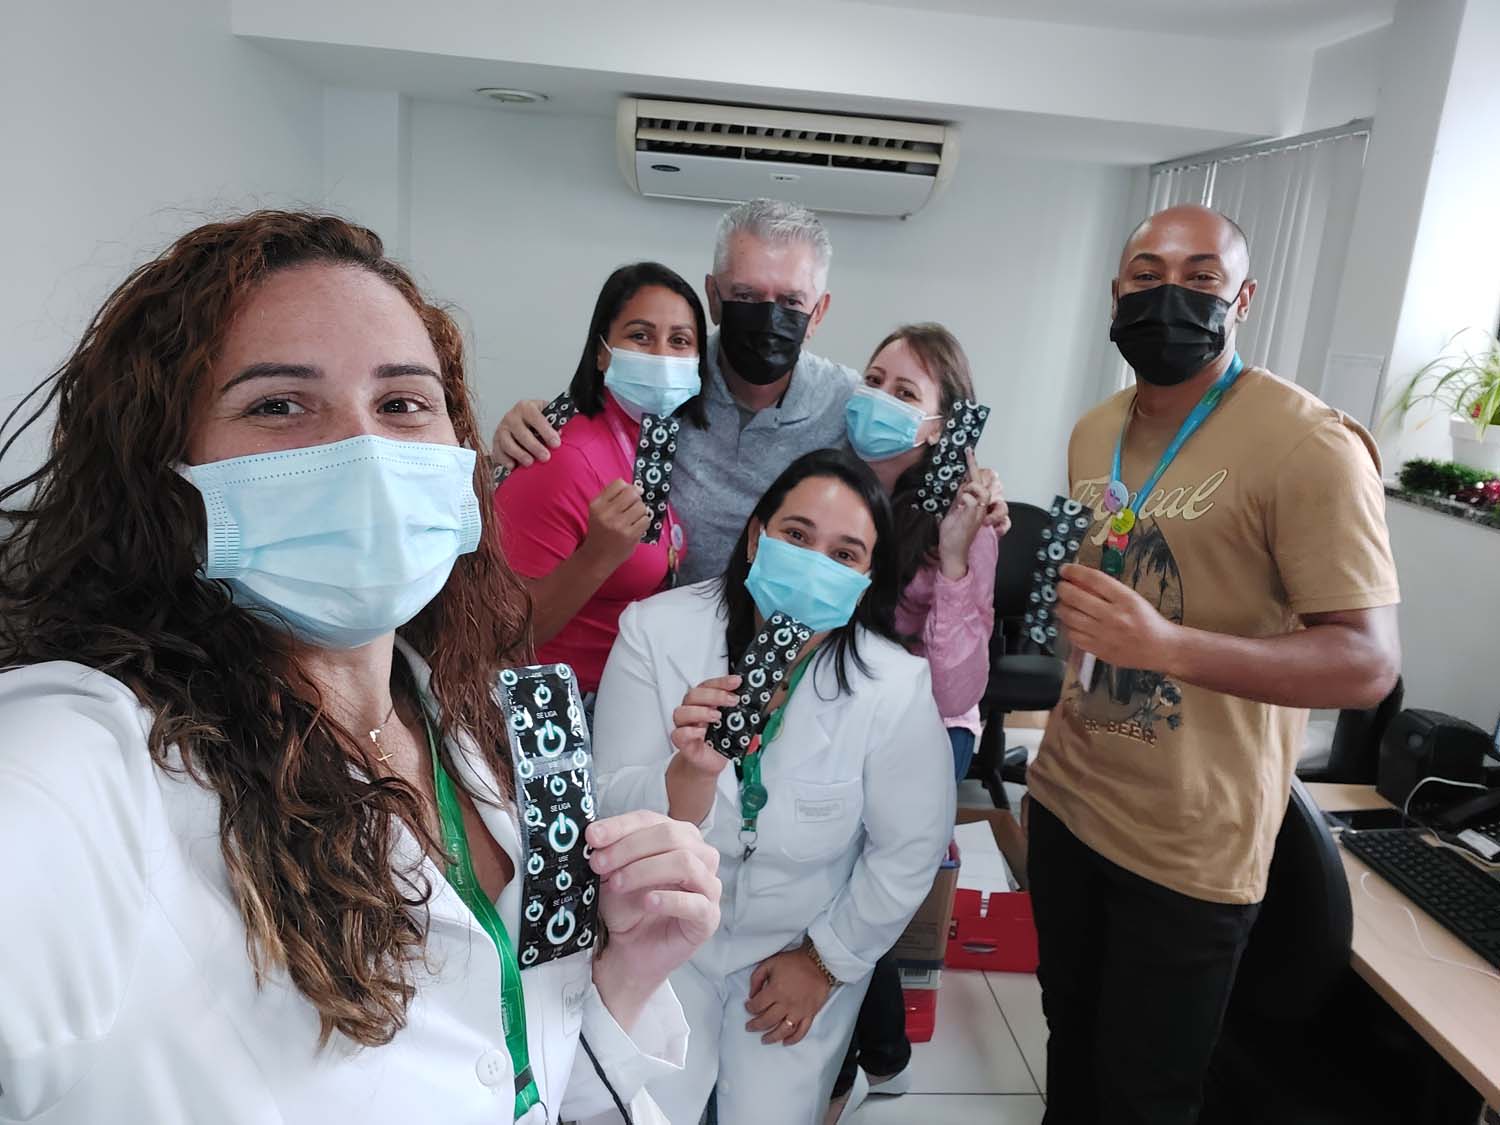 Promover conscientização e prevenção é o foco da Unimed Nova Iguaçu